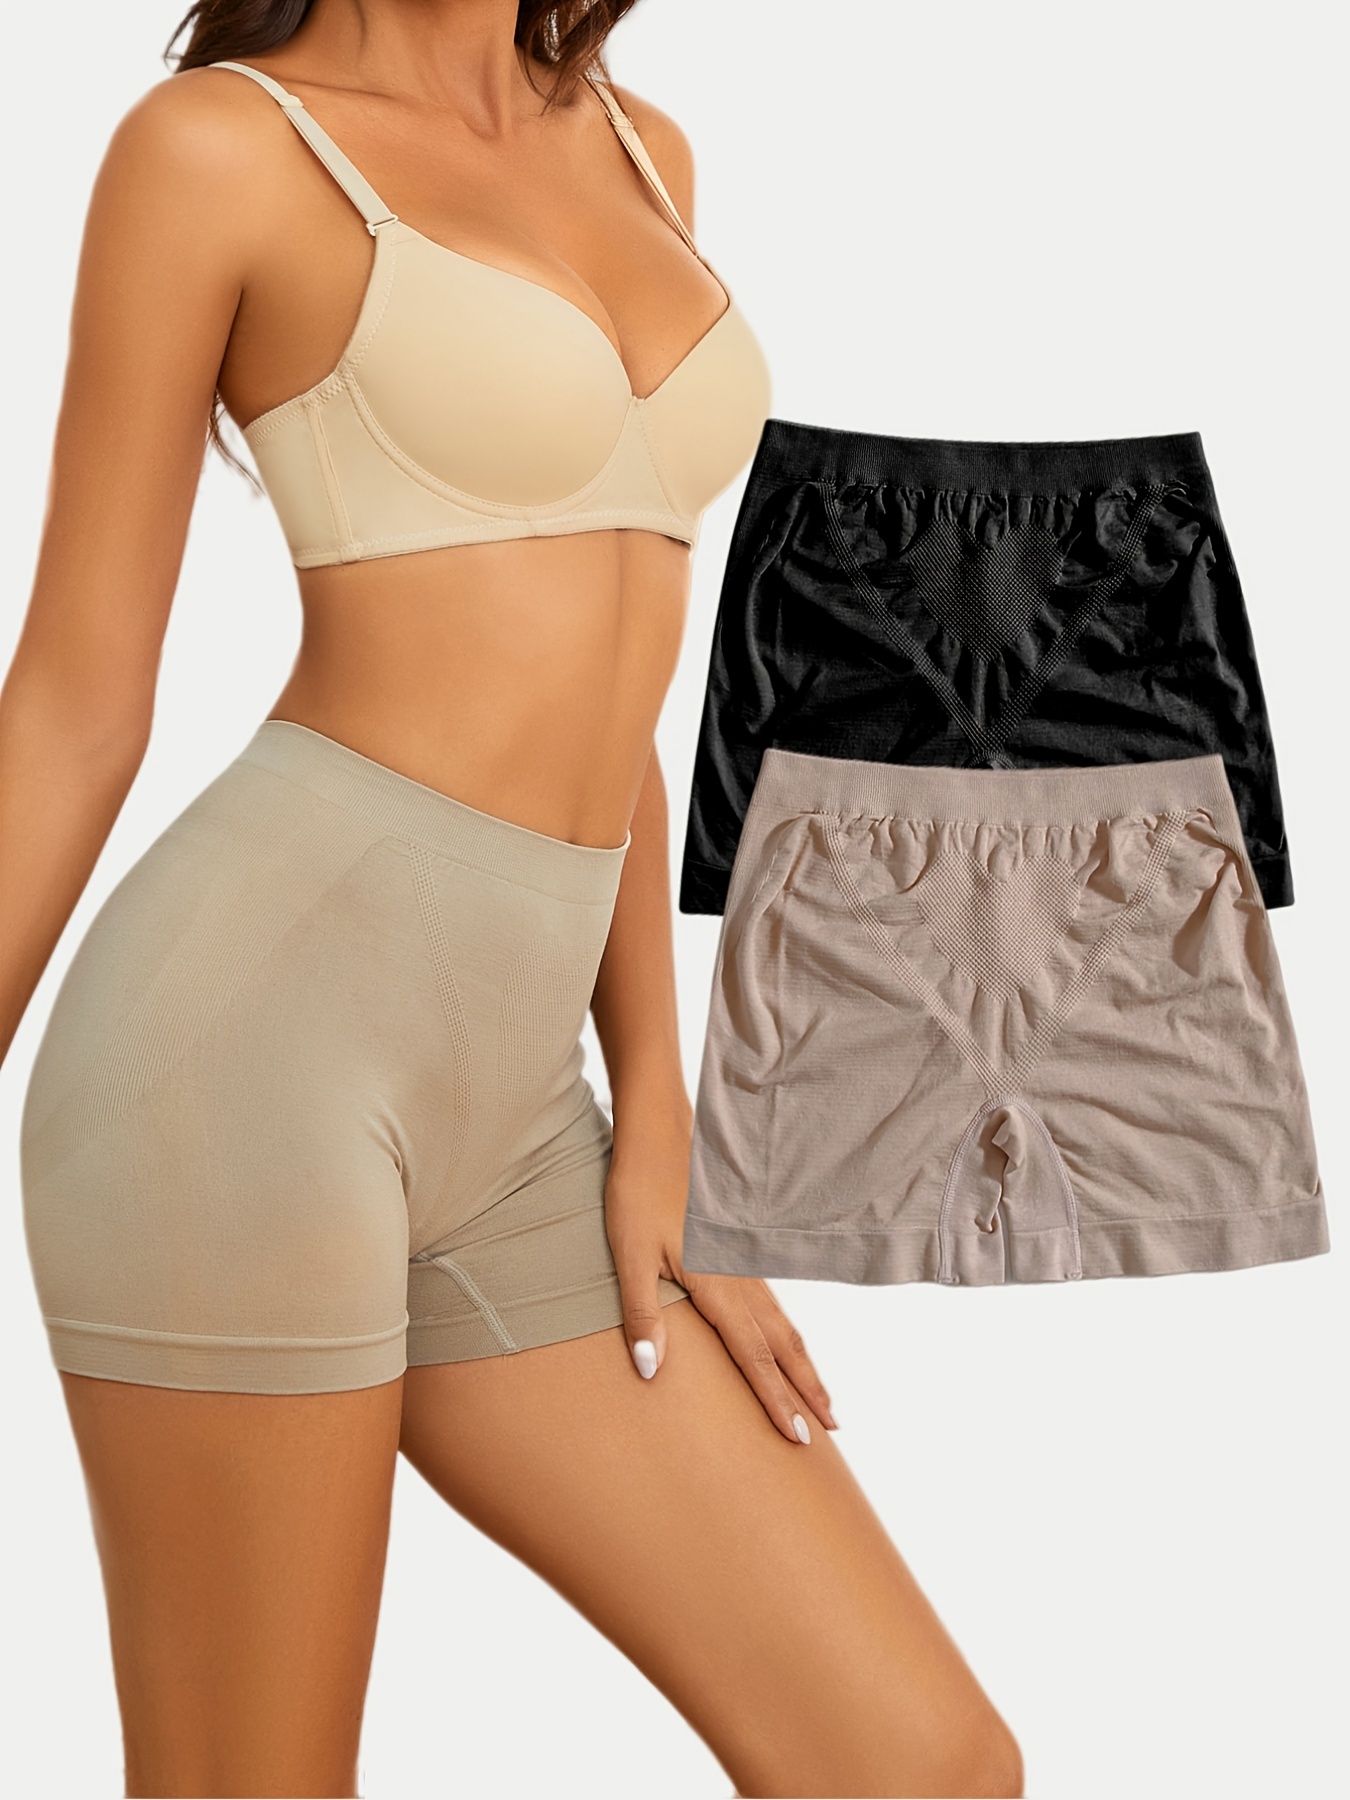 2pcs Shapewear Butt Lifter Control Panties Body Shaper Brief Boyshorts,  Women's Underwear & Lingerie